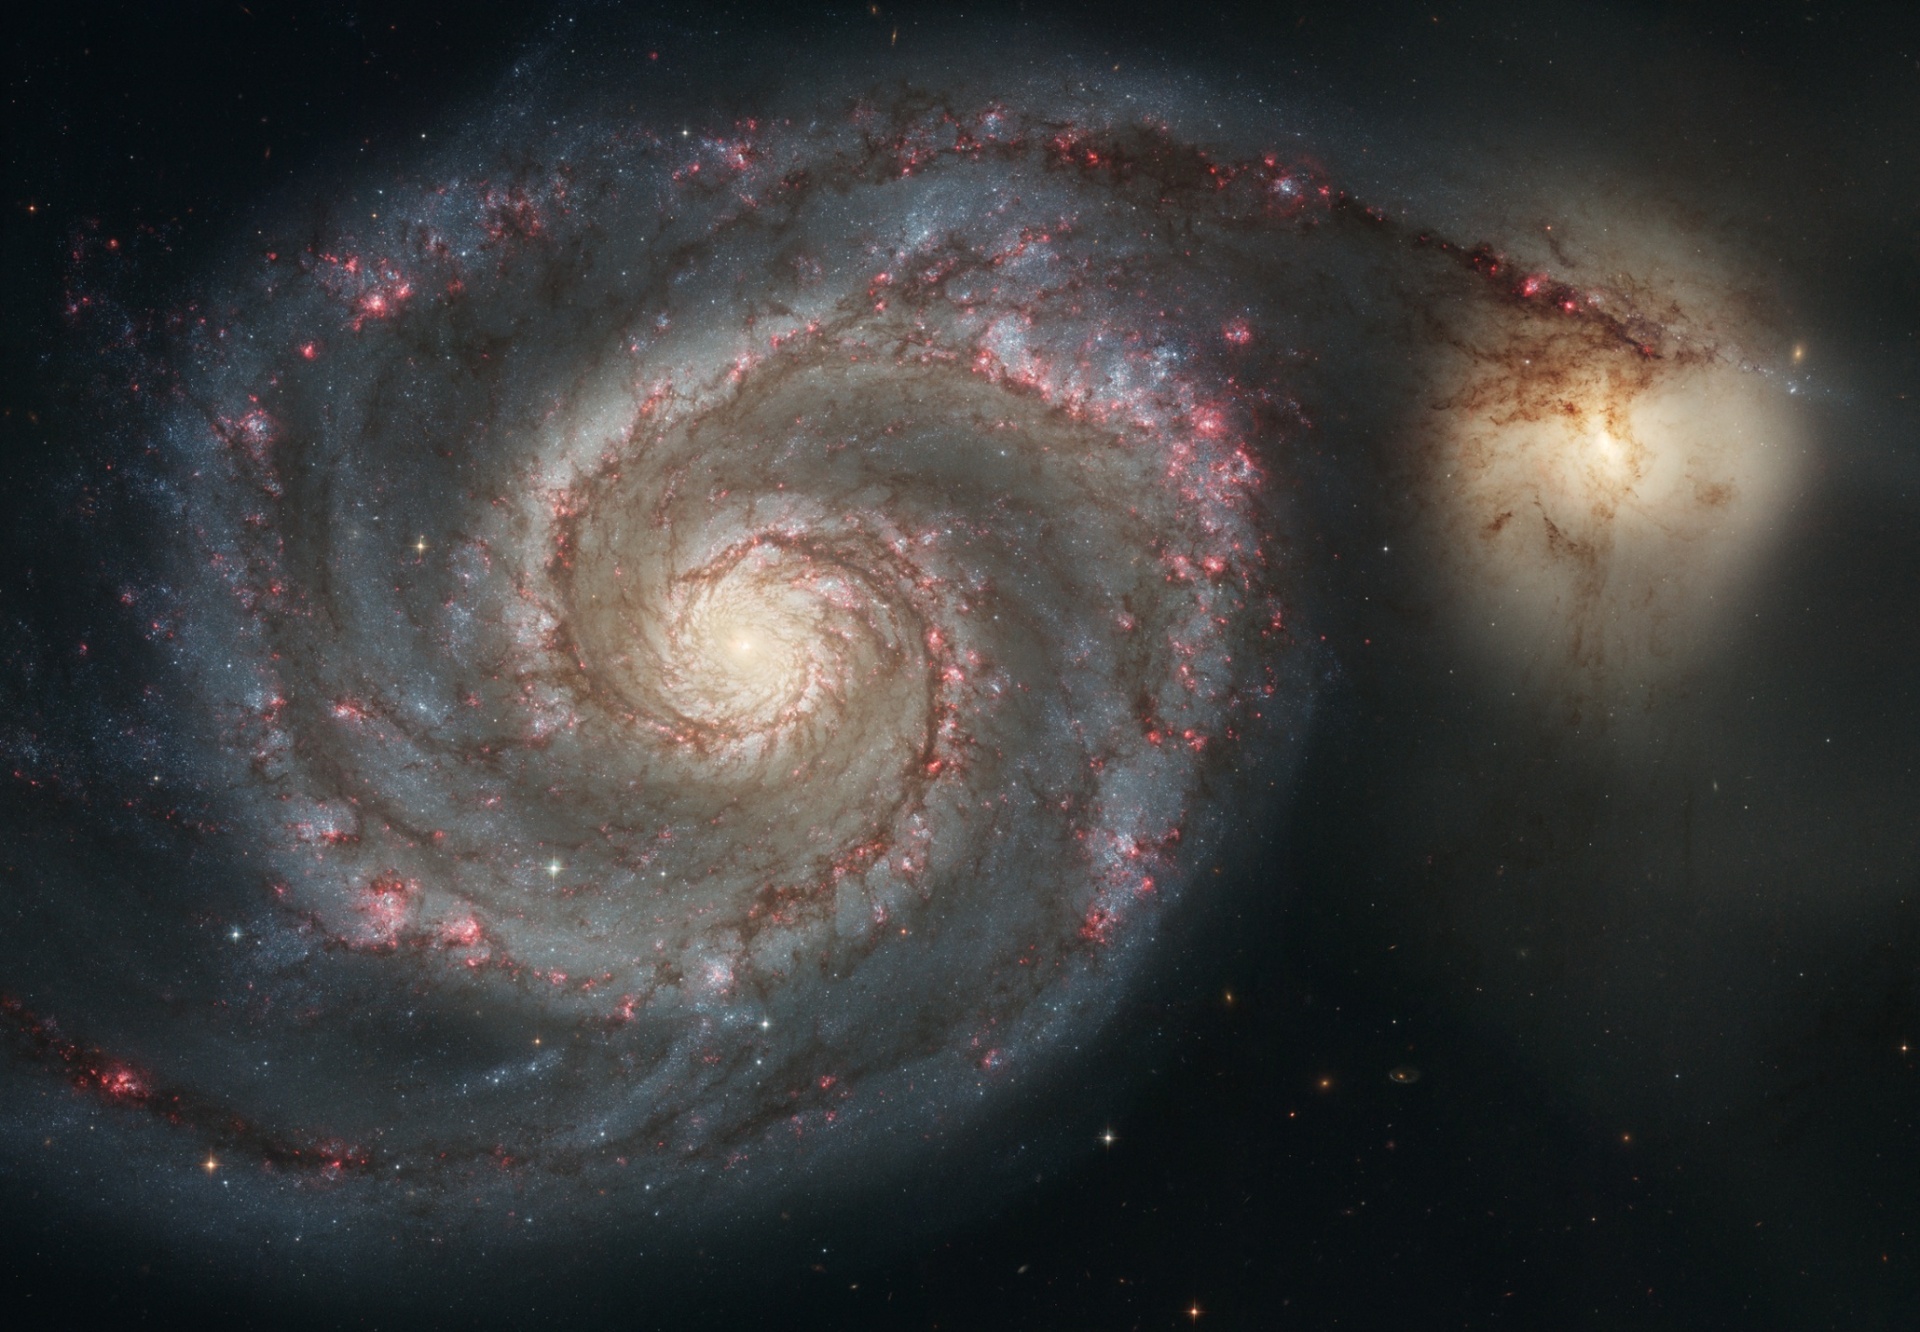 Imagem fantástica do Hubble feita da Galáxia do Redemoinho, mostrando os aglomerados de estrelas vermelhas em formação nos braços espirais e o núcleo nitidamente amarelo repleto de estrelas mais antigas.